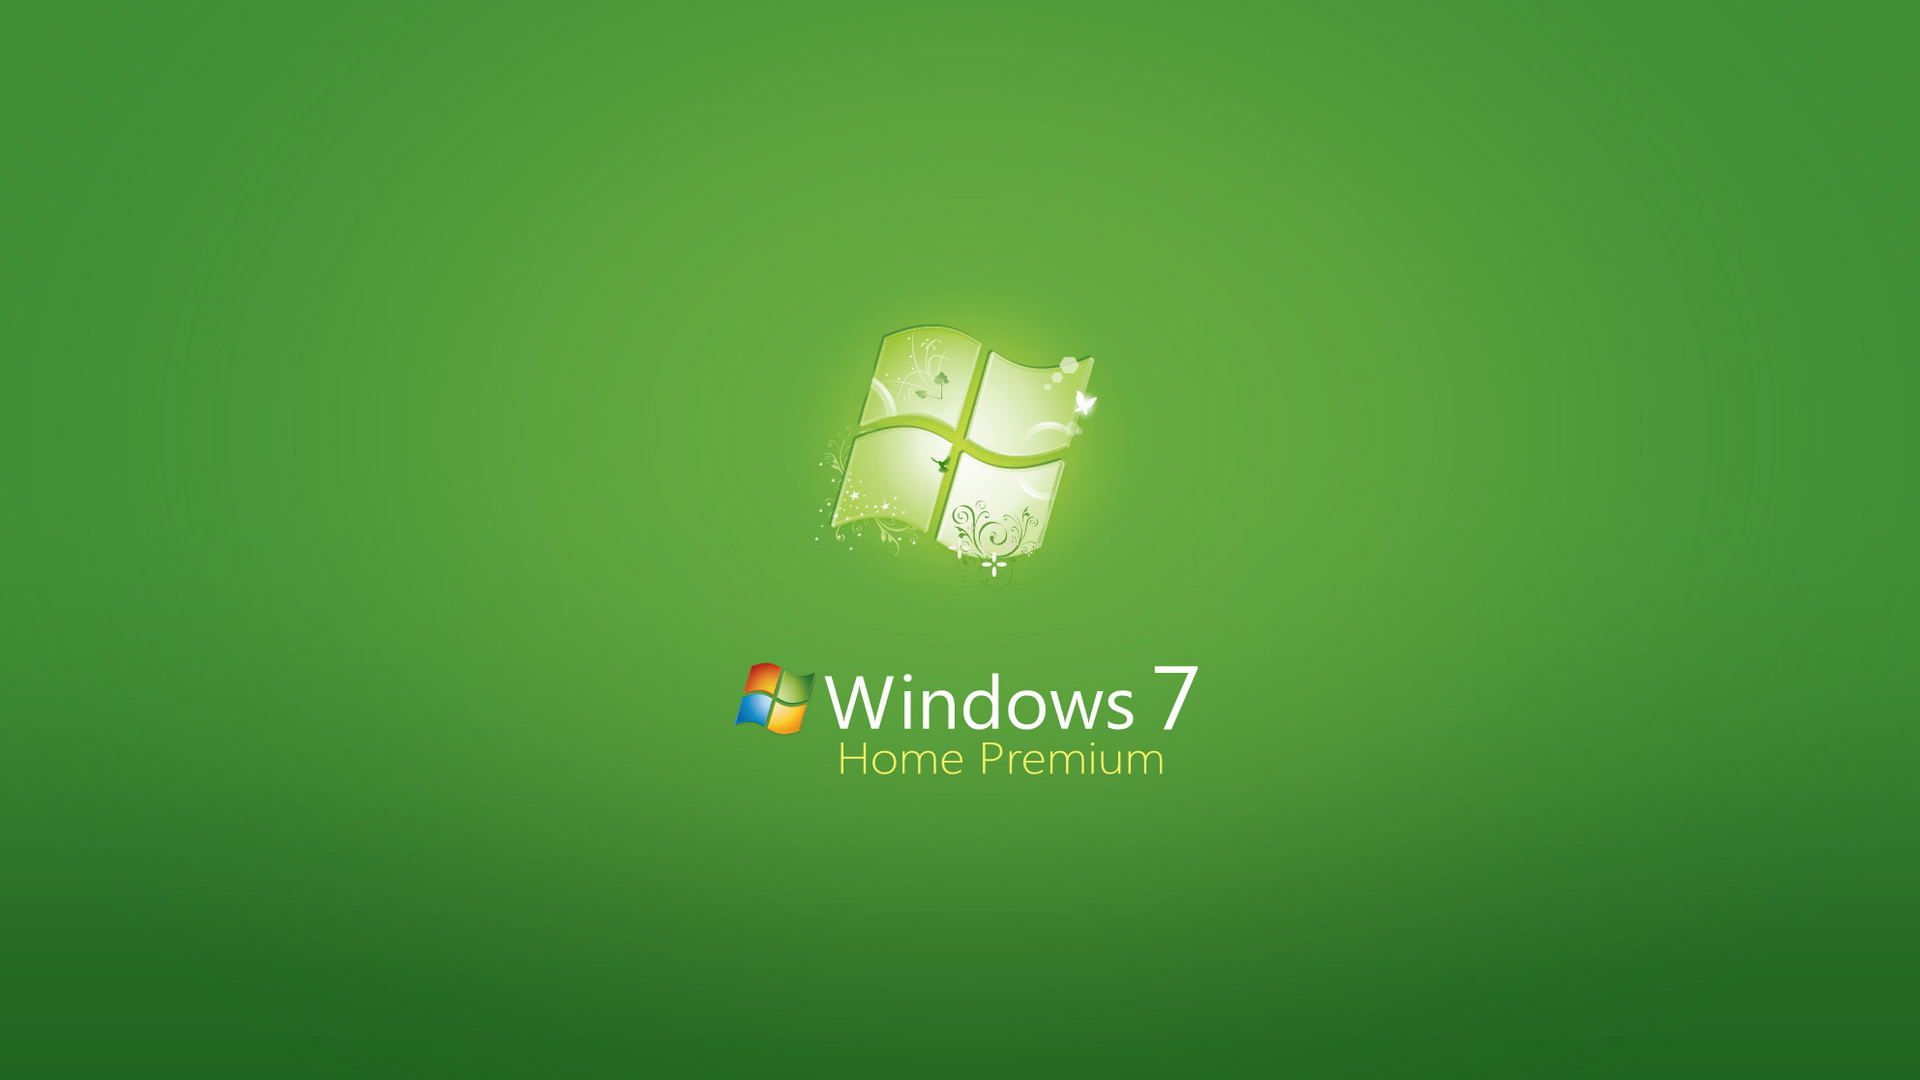 windows, logos, brands, background, green cellphone